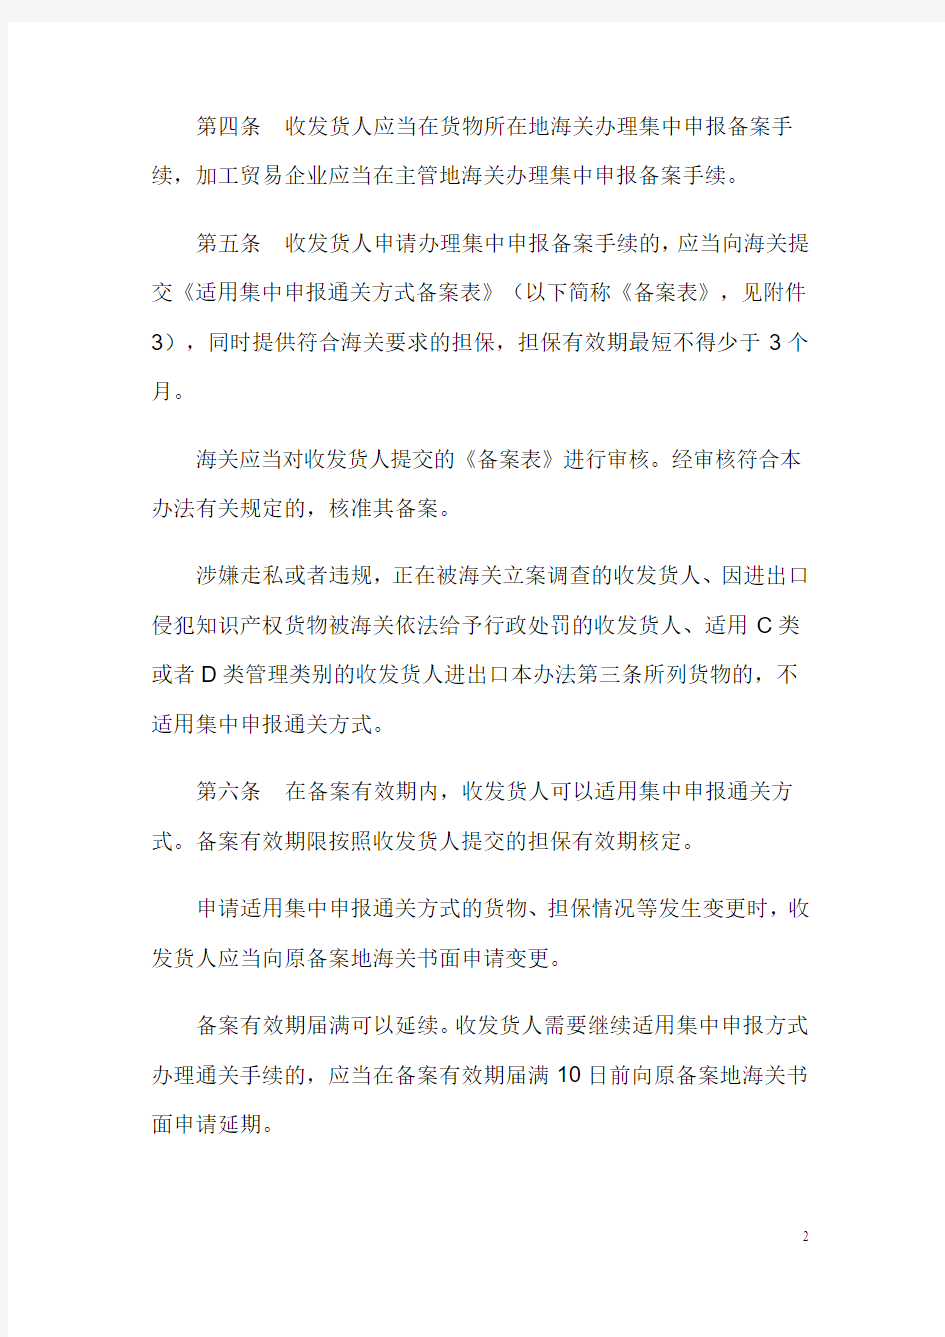 中华人民共和国海关进出口货物集中申报管理办法